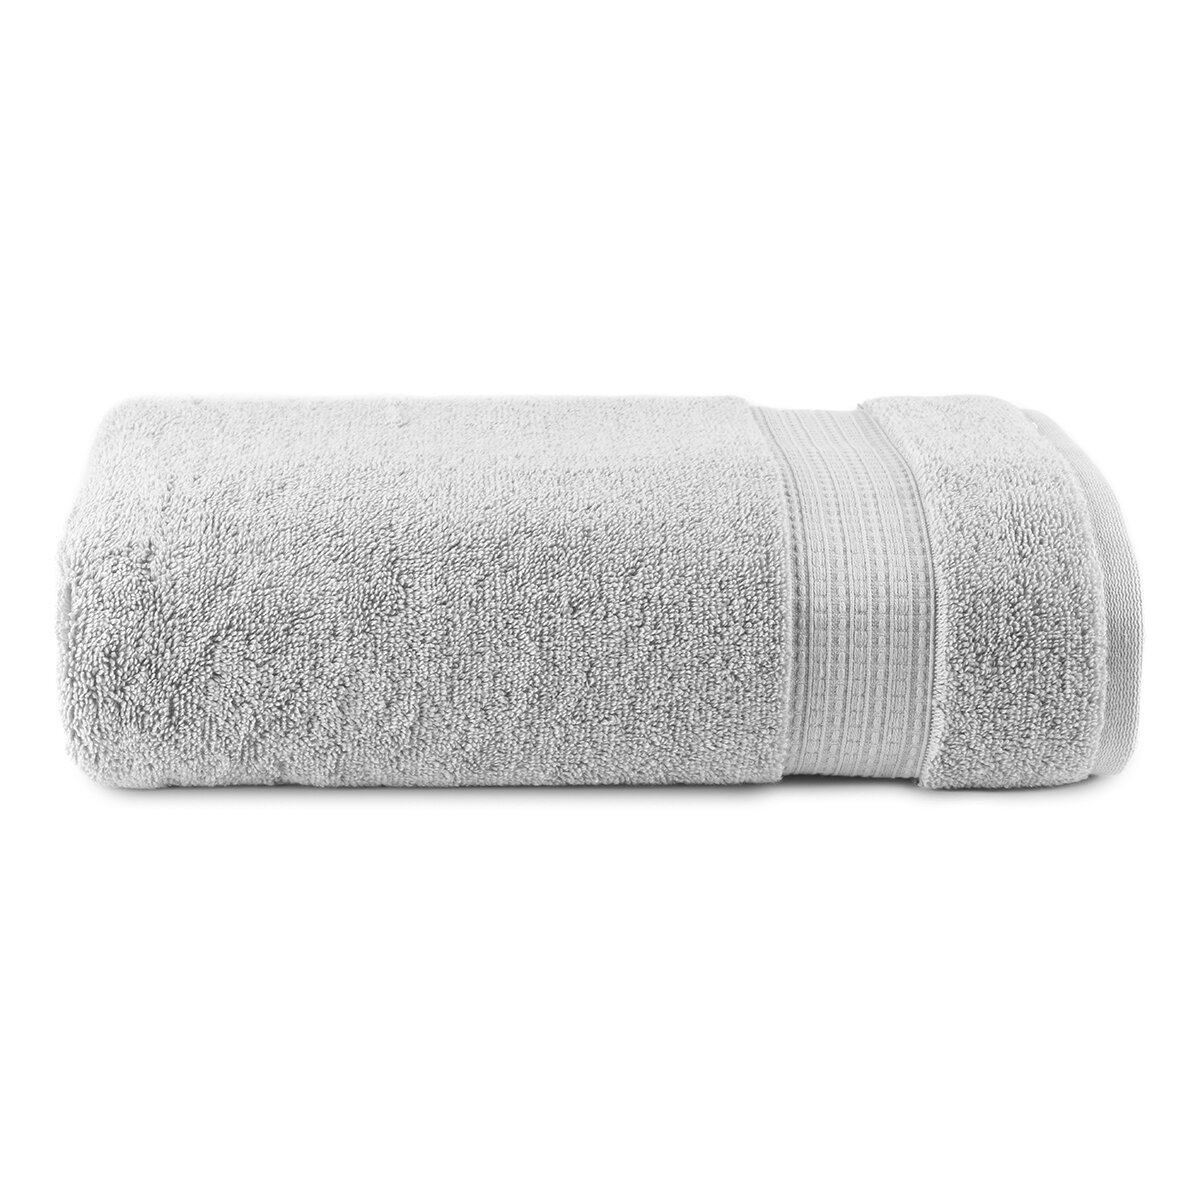  Toallas blancas ultra suaves de tela de microfibra toalla de  cara toalla de baño de hotel toalla de mano toalla de toalla portátil baño  ducha (color blanco, tamaño: 13.8x29.5 in) 